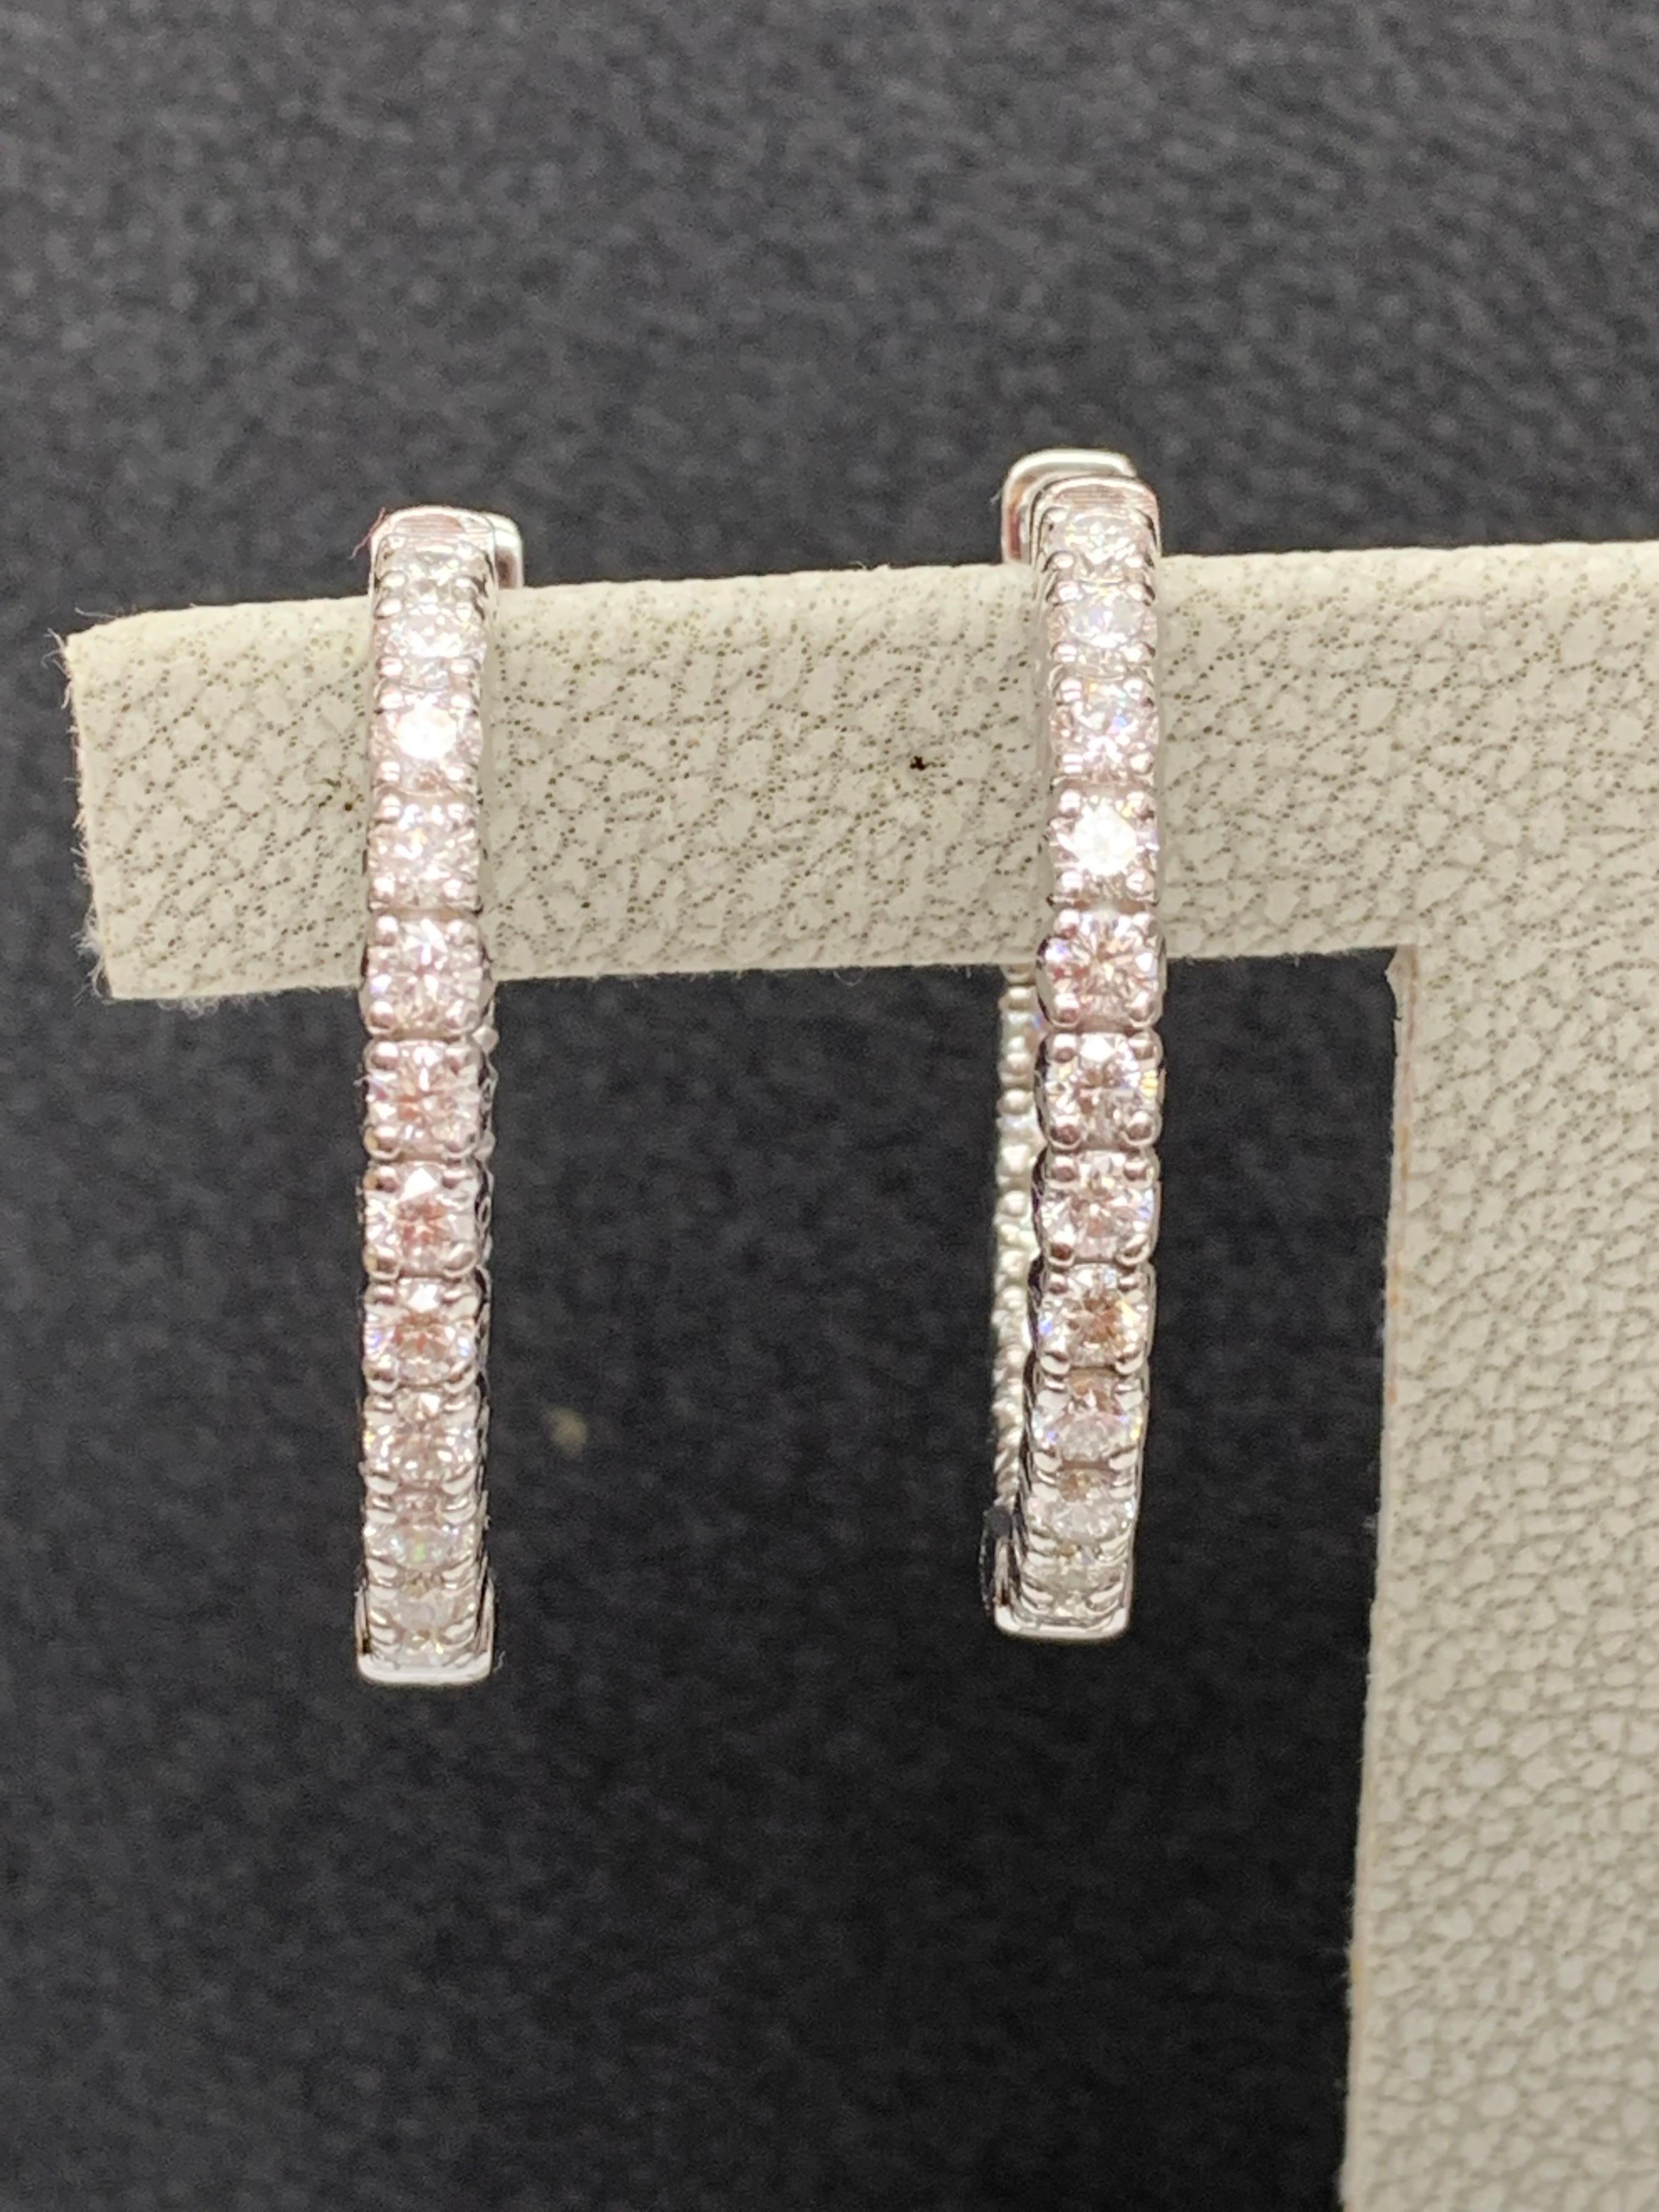 Ein schickes und modisches Paar Reif-Ohrringe mit runden Diamanten, gefasst in 14 Karat Weißgold.  40 runde Diamanten wiegen insgesamt 2 Karat. Ein schönes Schmuckstück.
Alle Diamanten sind GH Farbe SI1 Klarheit.
Style ist in verschiedenen